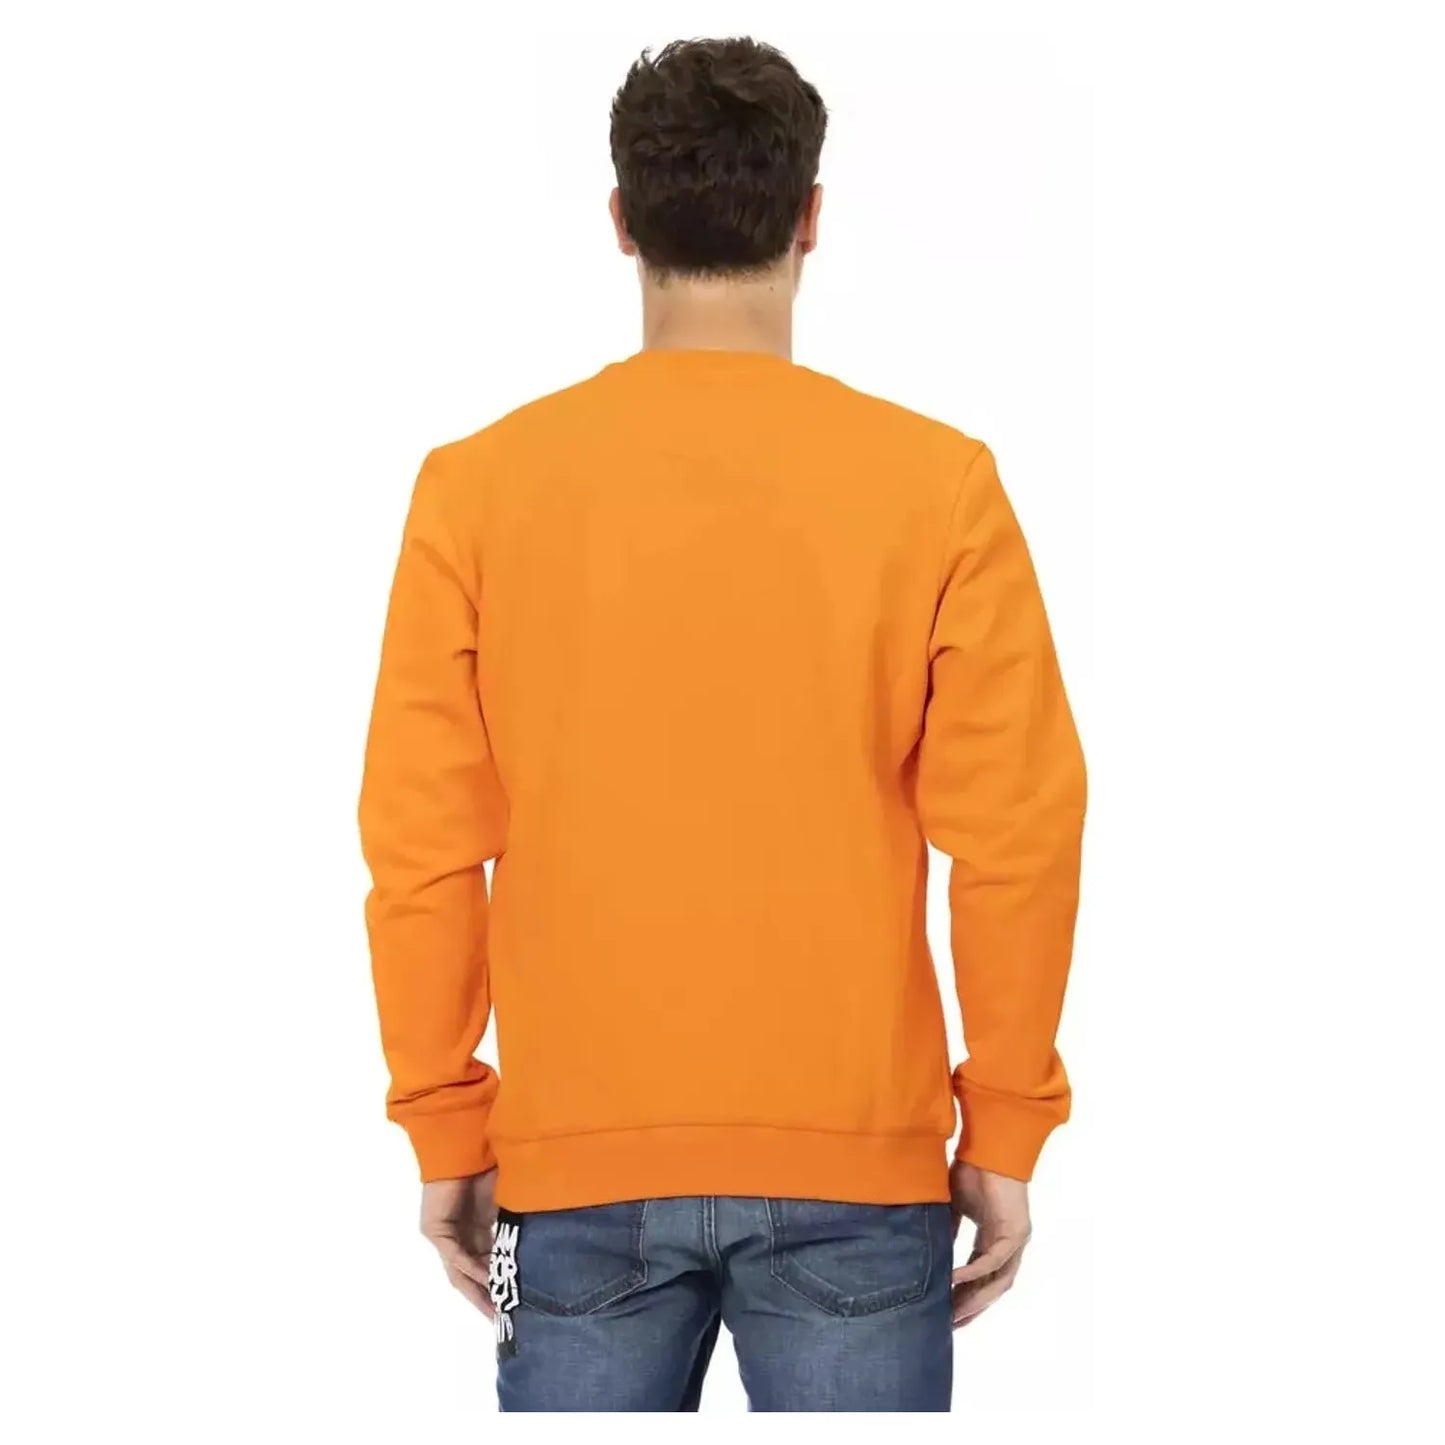 Automobili Lamborghini Sleek Orange Crewneck Sweatshirt with Sleeve Logo orange-cotton-sweater-11